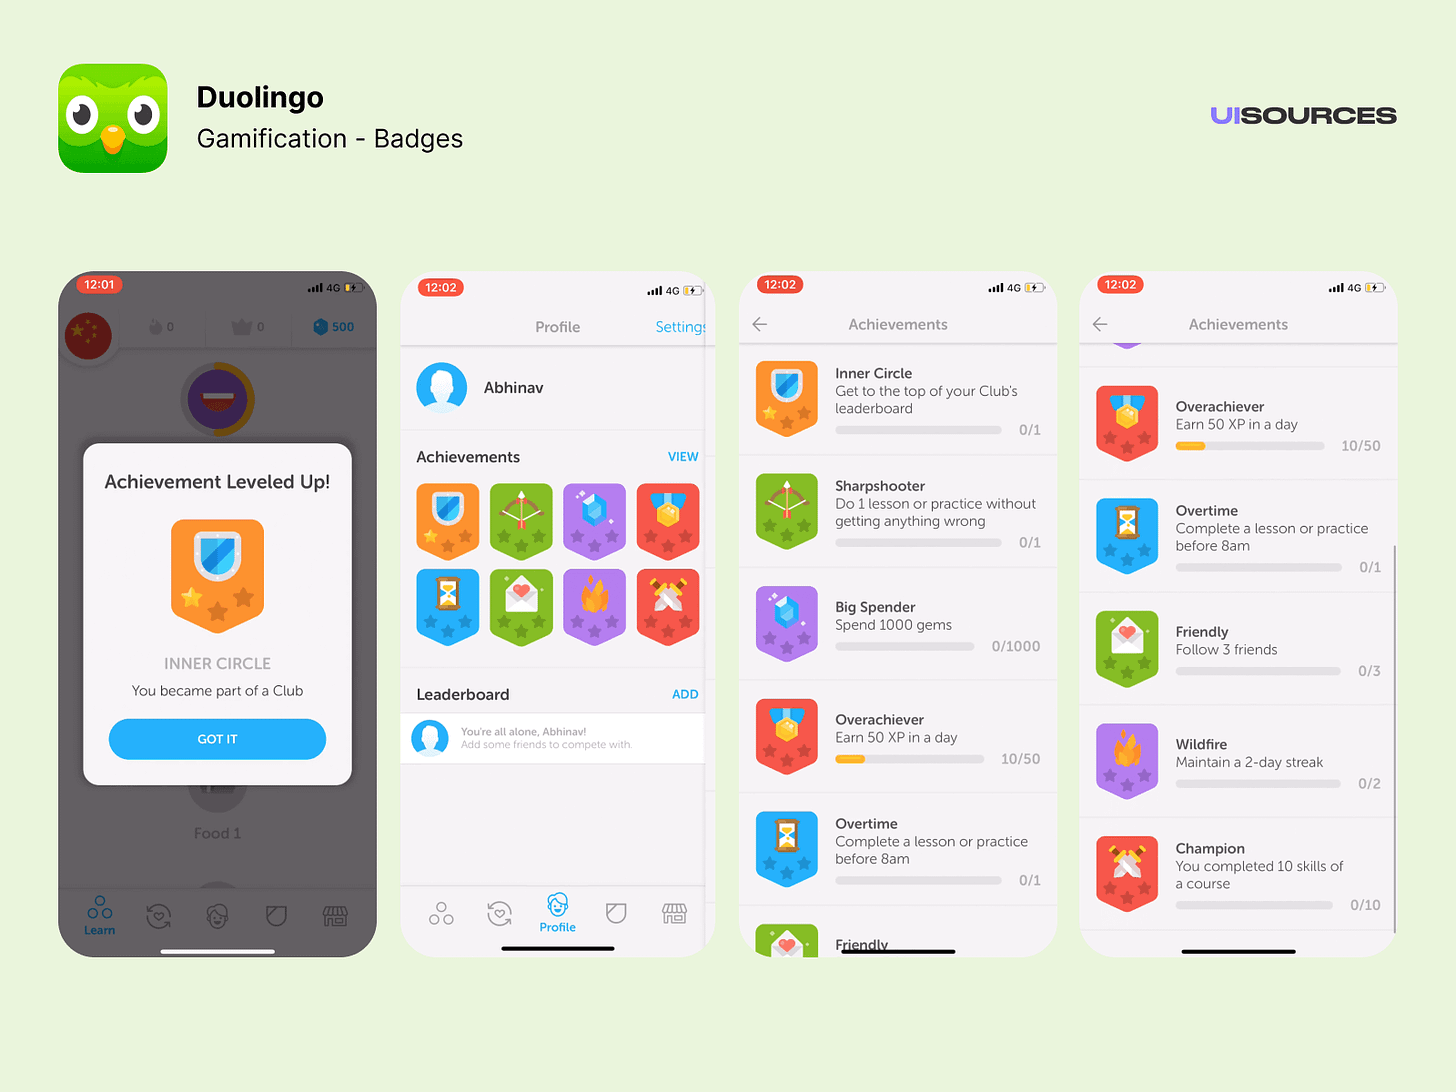 Duolingo - Gamification Screenshots | UI Sources